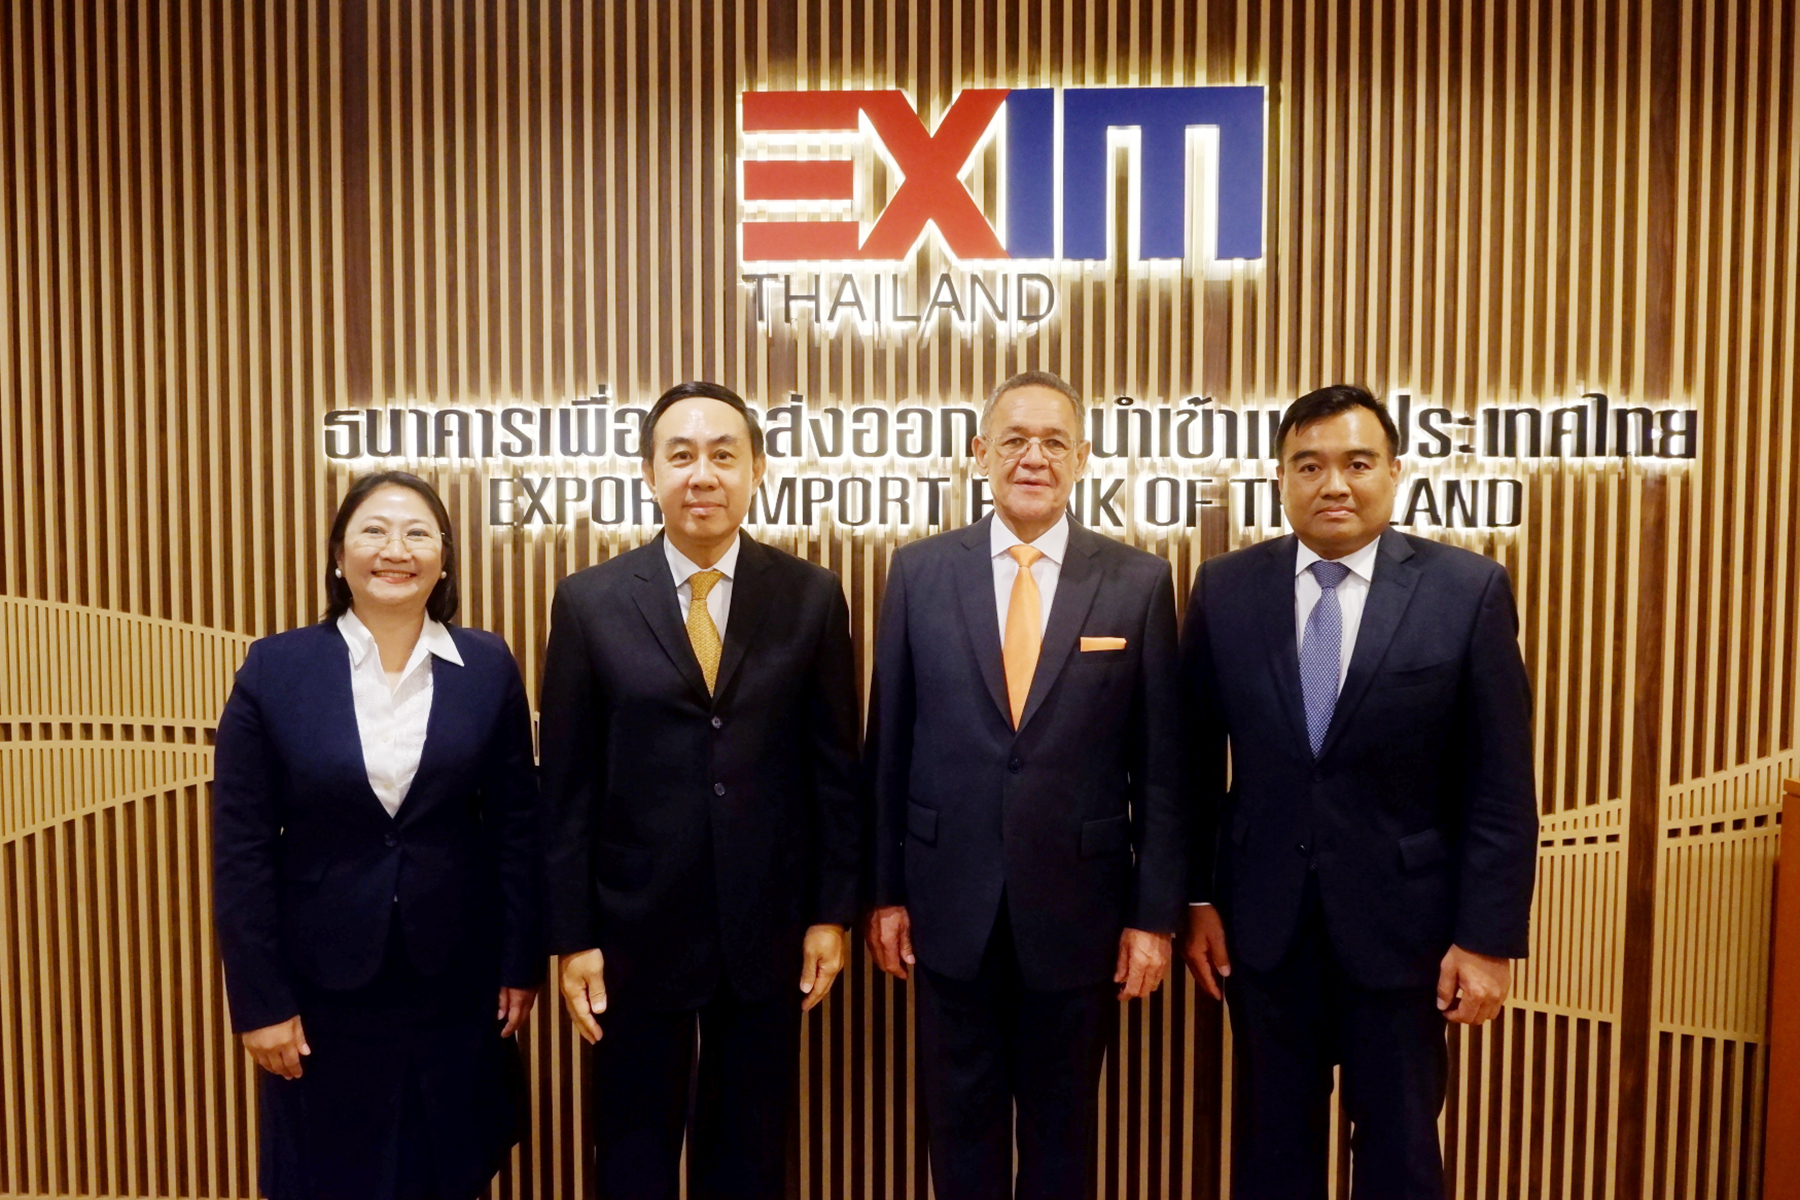 EXIM BANK ต้อนรับเอกอัครราชทูตสาธารณรัฐแอฟริกาใต้ประจำประเทศไทย  หารือแนวทางส่งเสริมการค้าการลงทุนไทย-แอฟริกาEXIM BANK ต้อนรับเอกอัครราชทูตสาธารณรัฐแอฟริกาใต้ประจำประเทศไทย